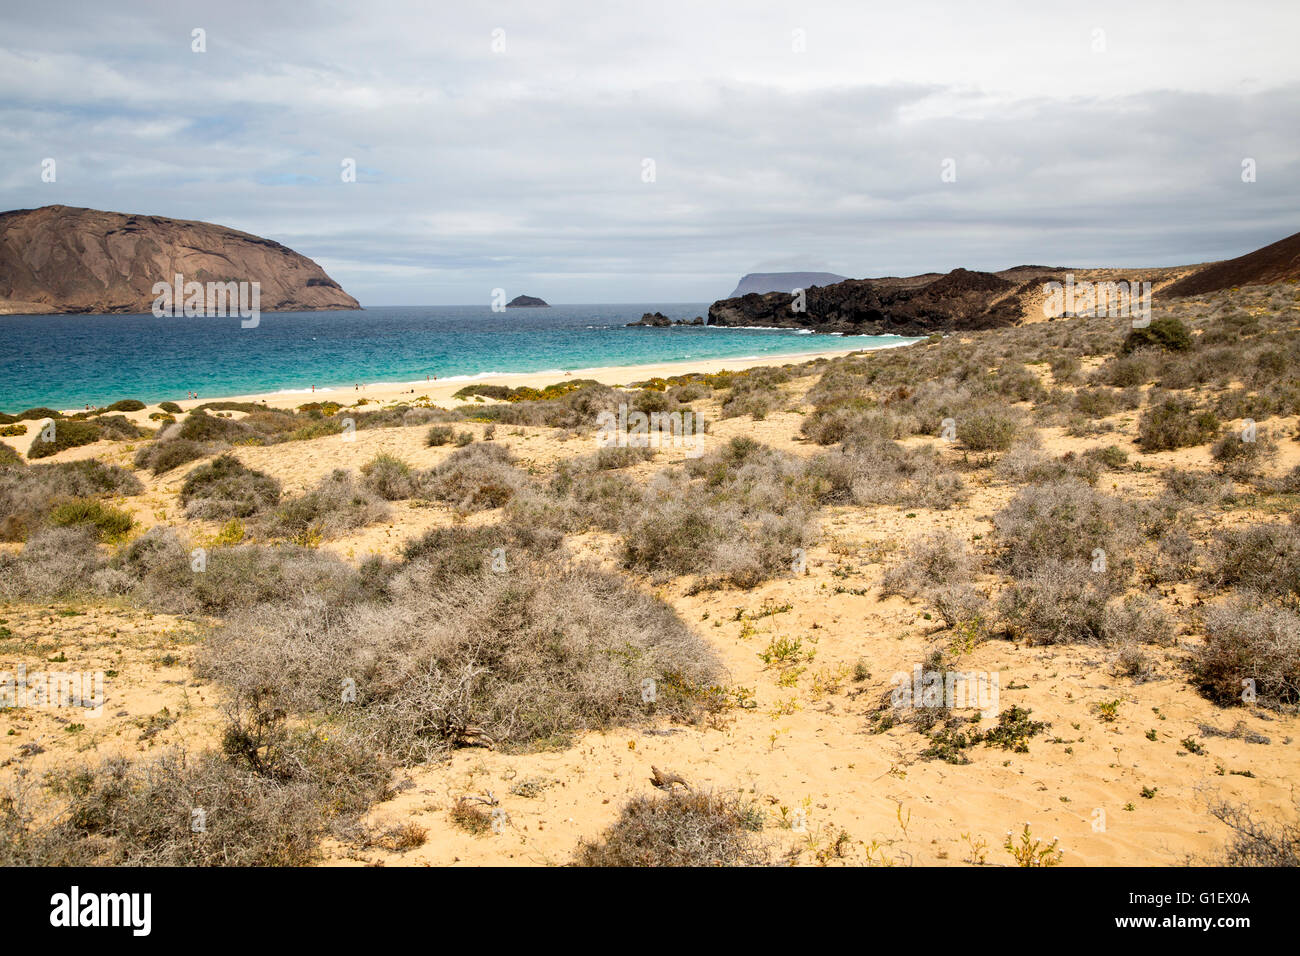 Montana Clara isola riserva naturale e la spiaggia di sabbia di Playa de las Conchas, Graciosa island, Lanzarote, Isole Canarie, Spagna Foto Stock